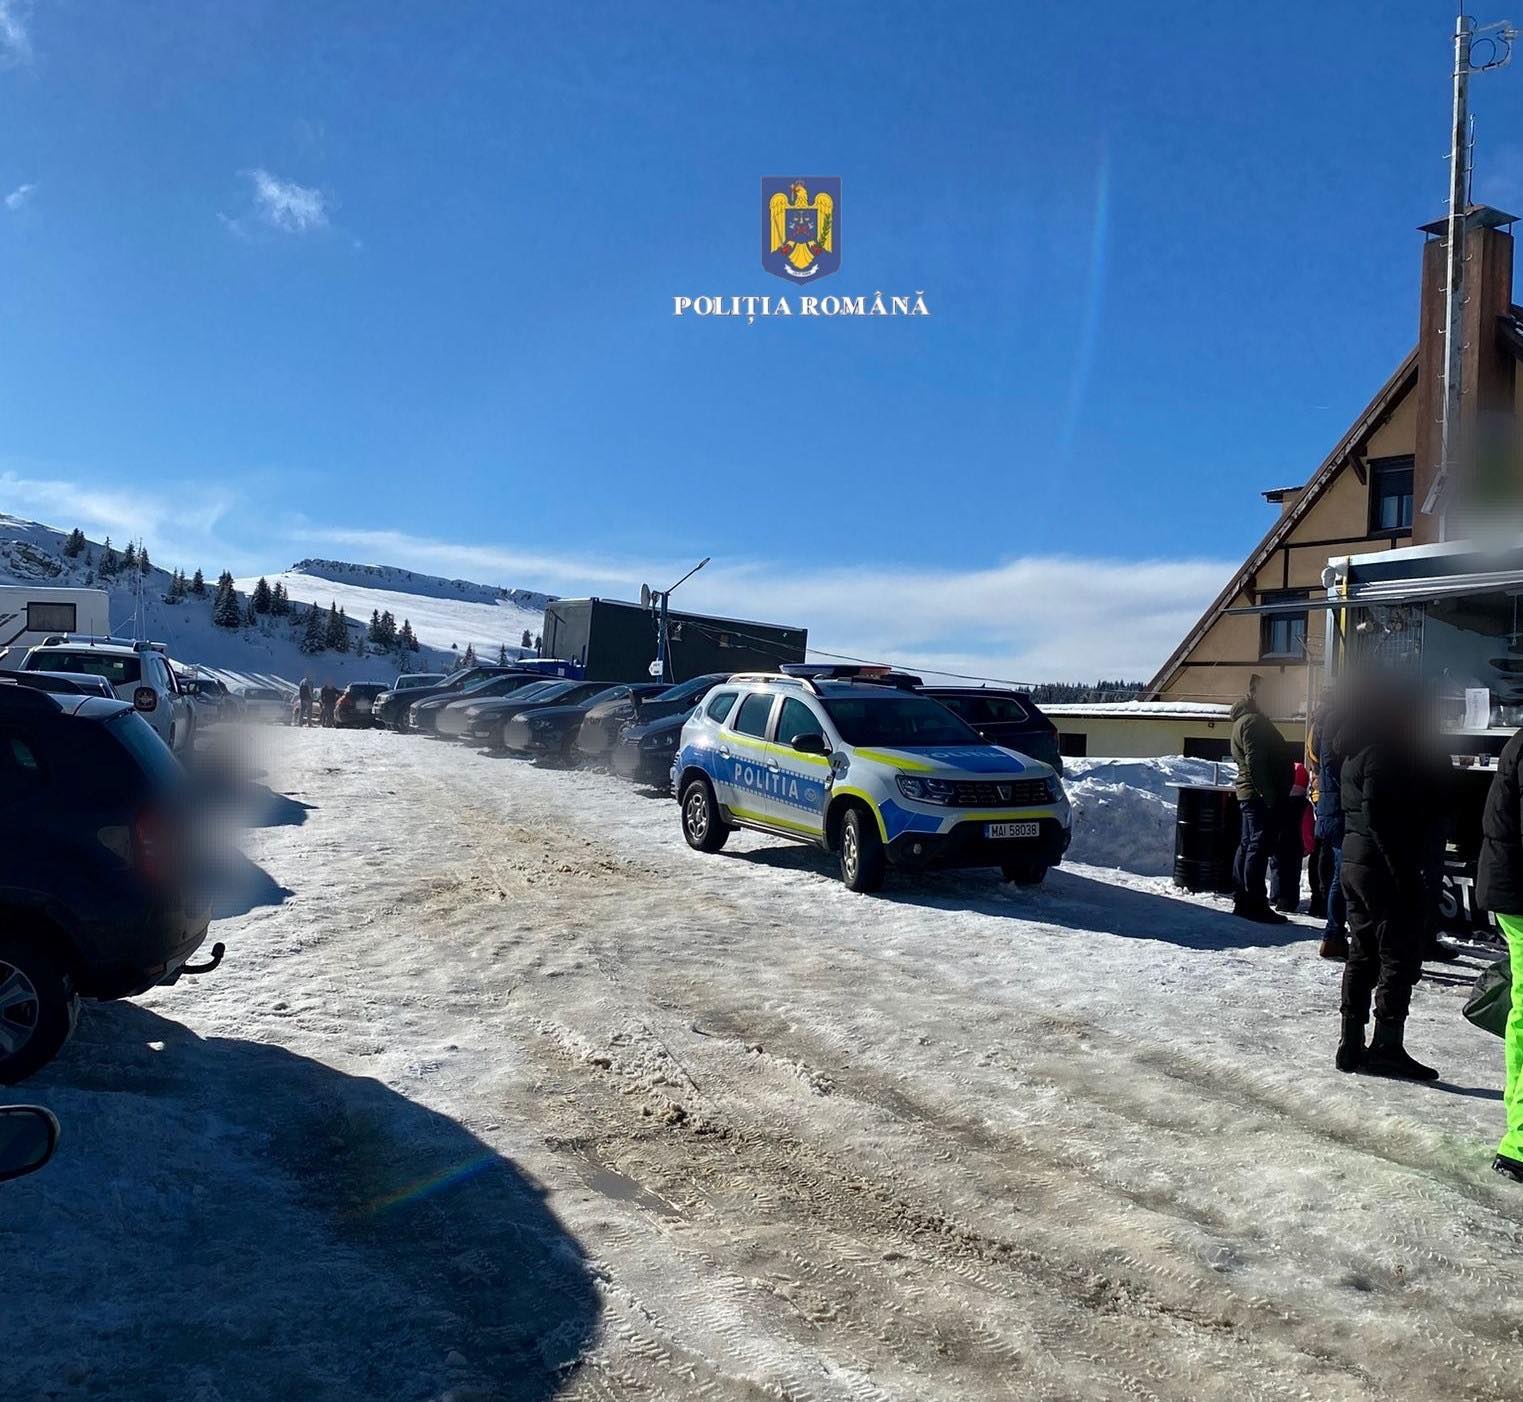 Polițiștii, prezenți în mijlocul turiștilor, în zona montană. Ce trebuie să știți dacă urcați pe drumul acoperit de zăpadă sau polei